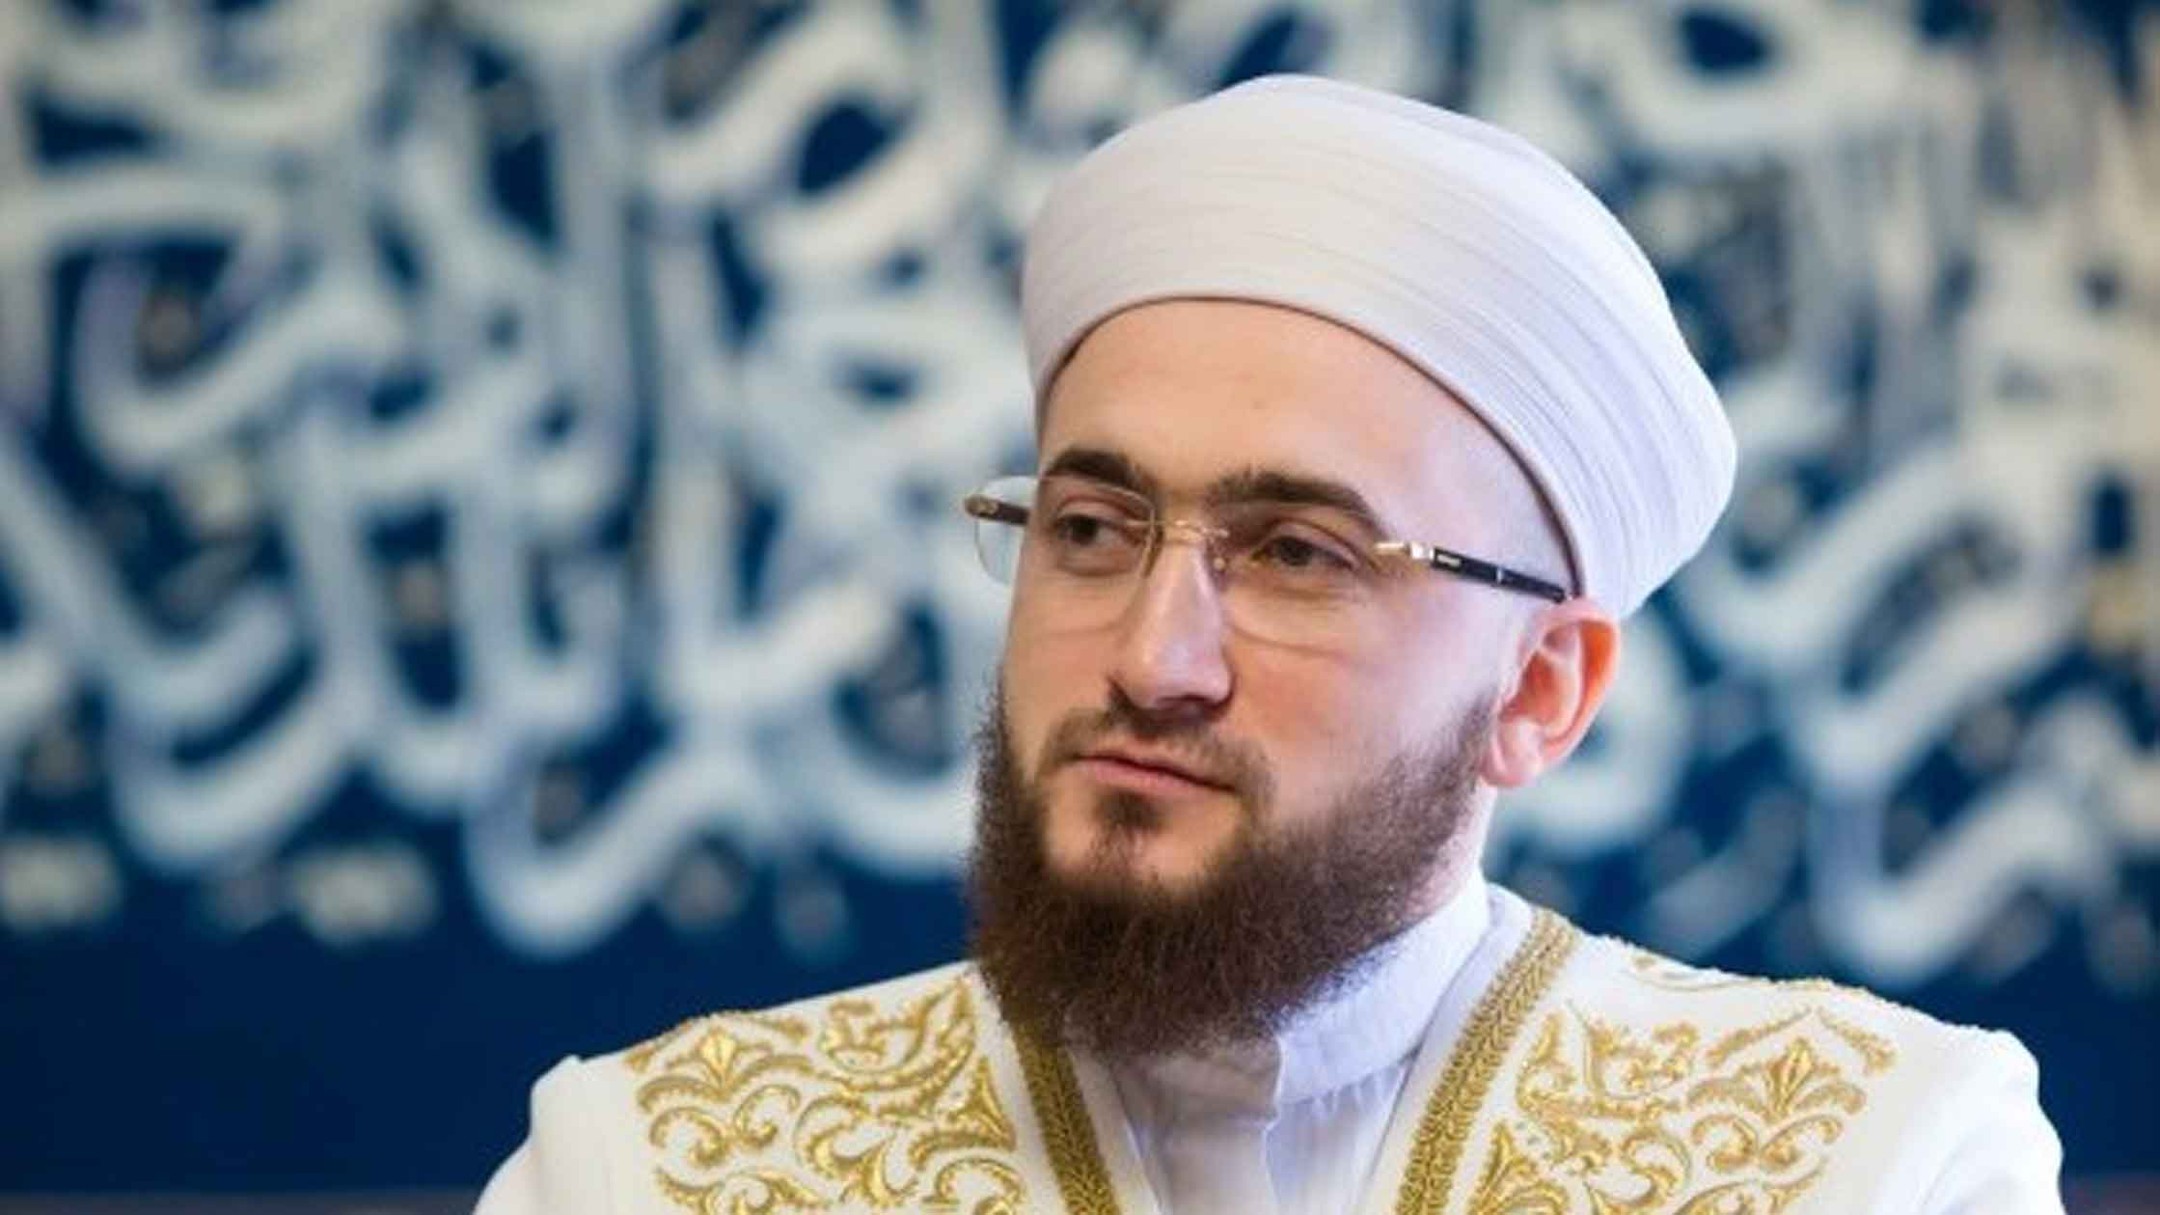 Dailystorm - «Жалкие моральные уродцы»: муфтий Татарстана осудил Европу за оскорбления мусульман